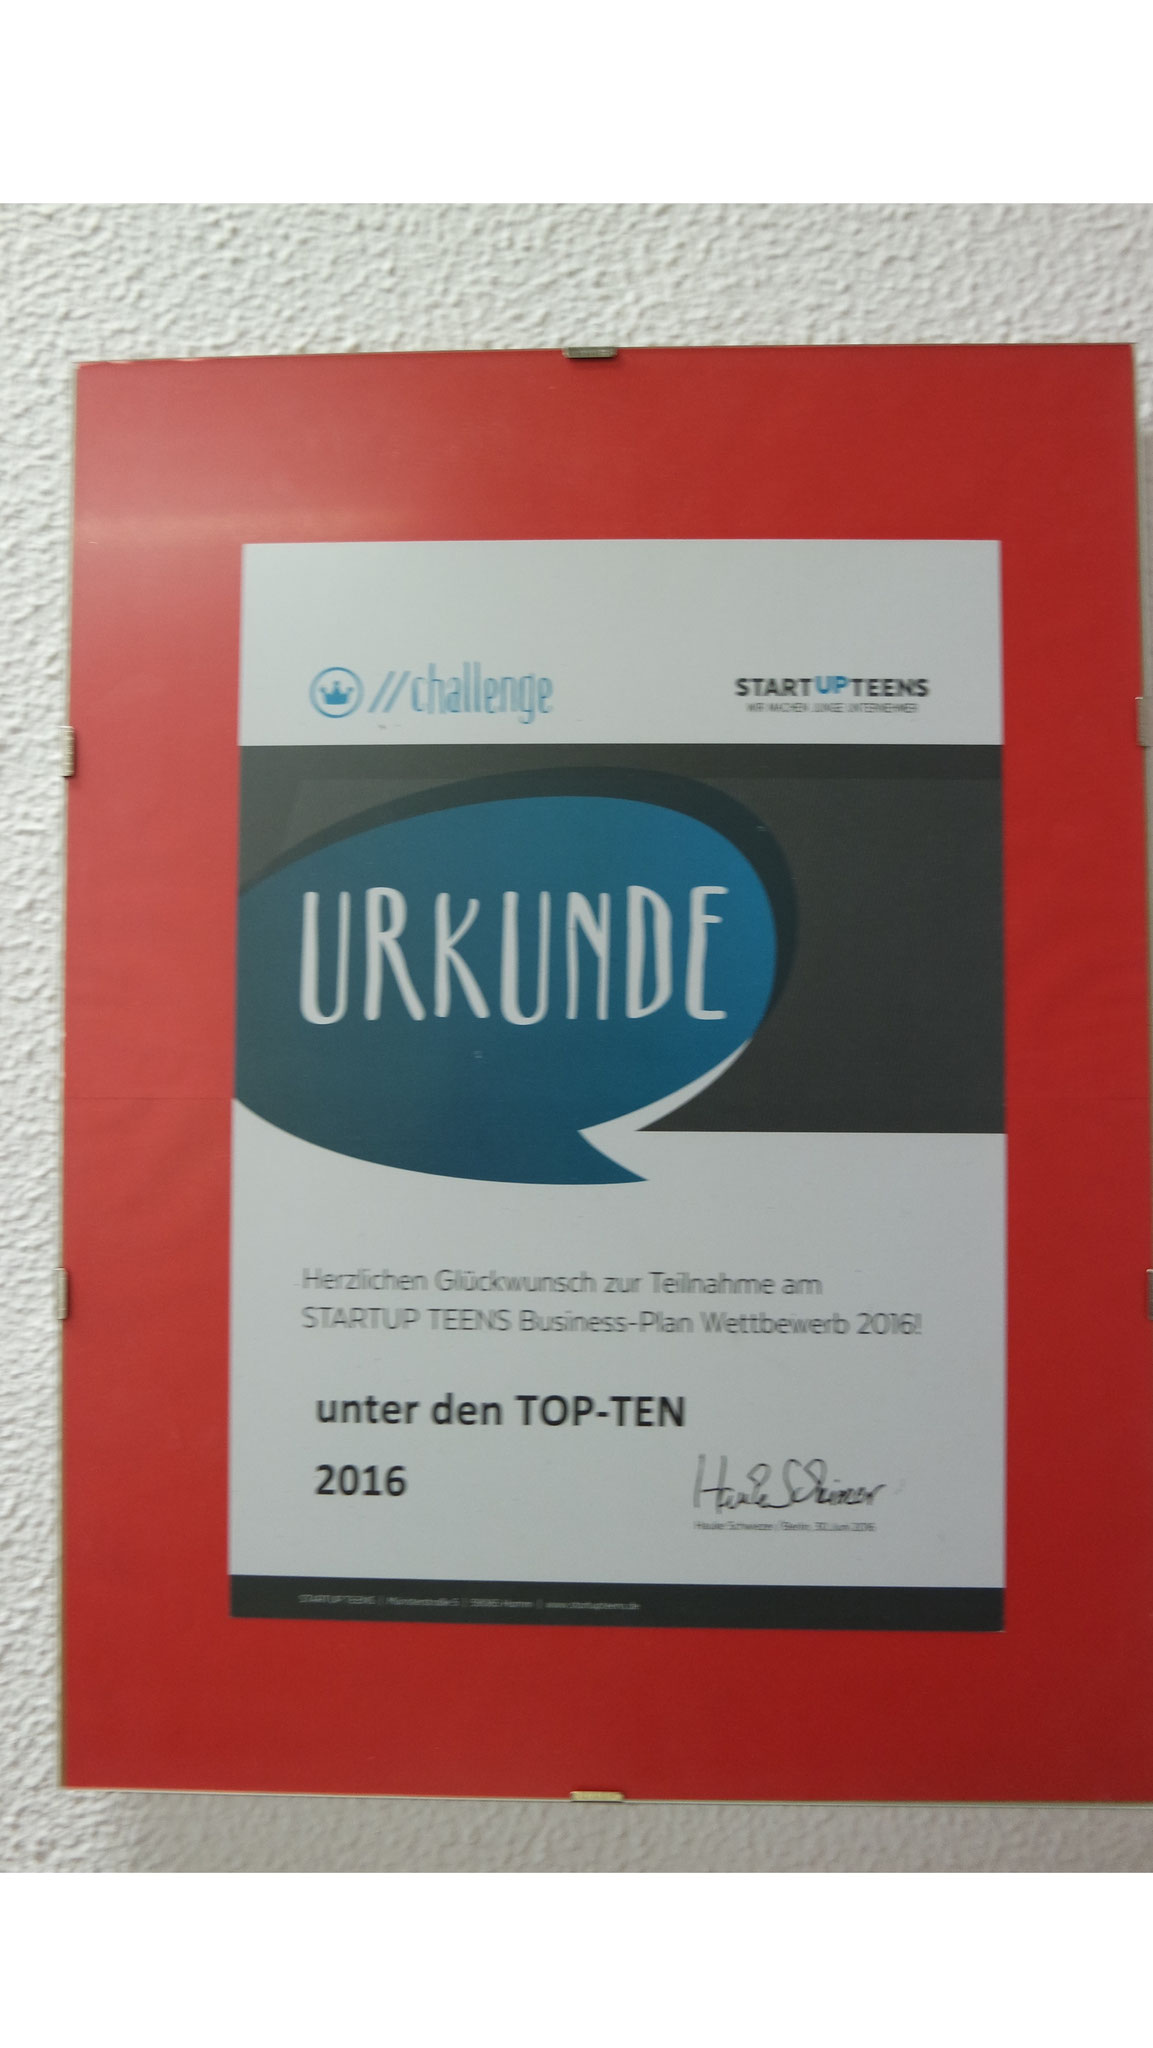 2016: in den Top 10 beim deutschlandweiten "STARTUP TEENS" Businessplan-Wettbewerb in der Kategorie Beauty und Fashion